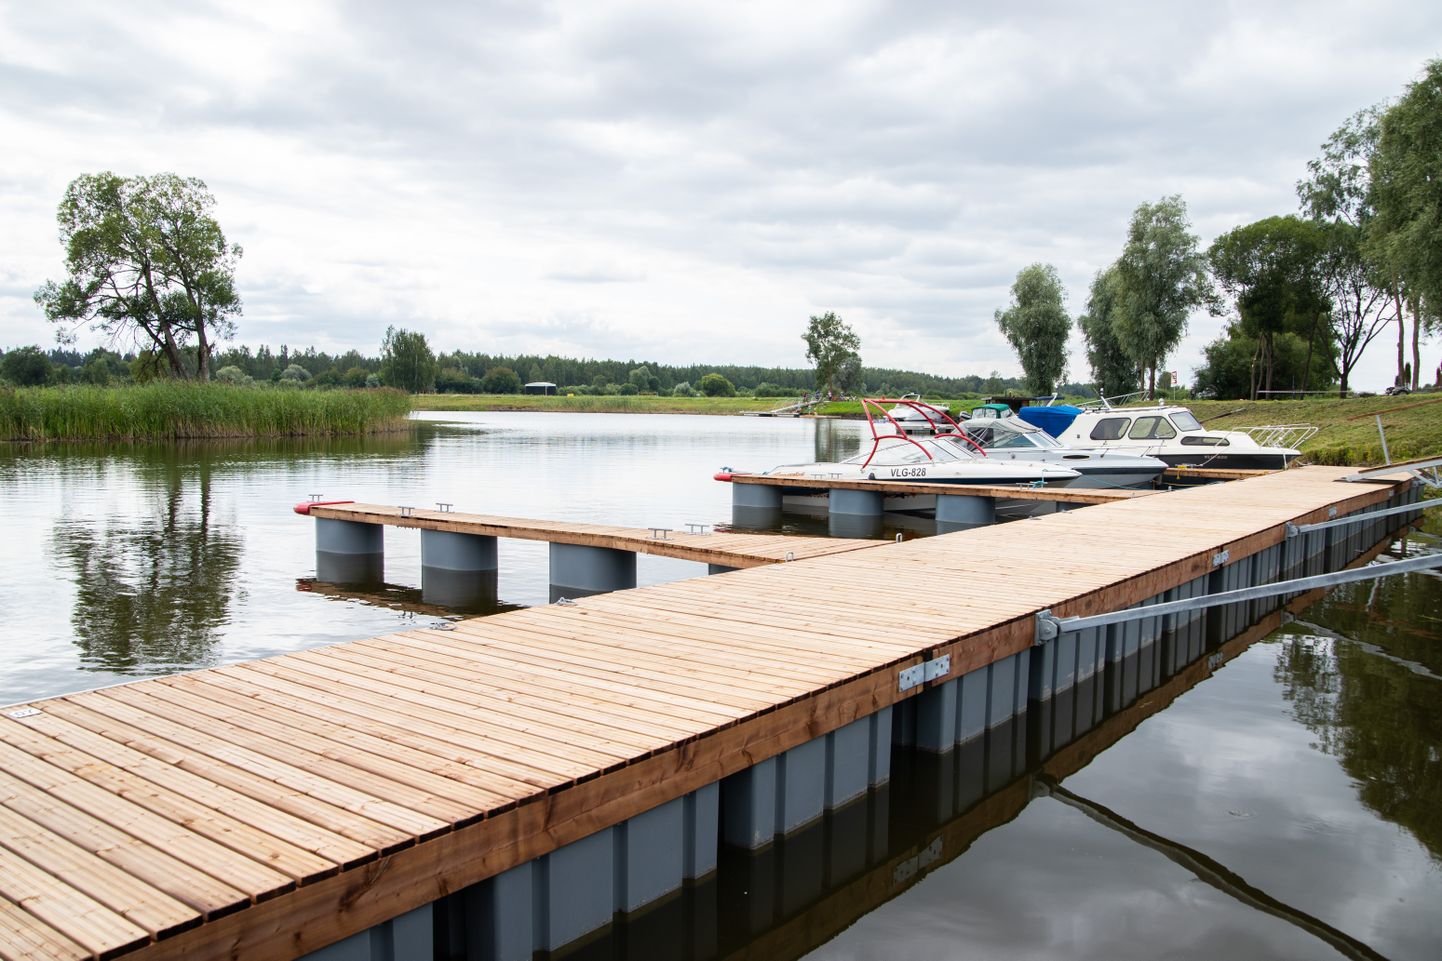 Ühena neljast projektist pälvis toetuse Luunja jõesadama puhke- ja välispordiala arendamine.